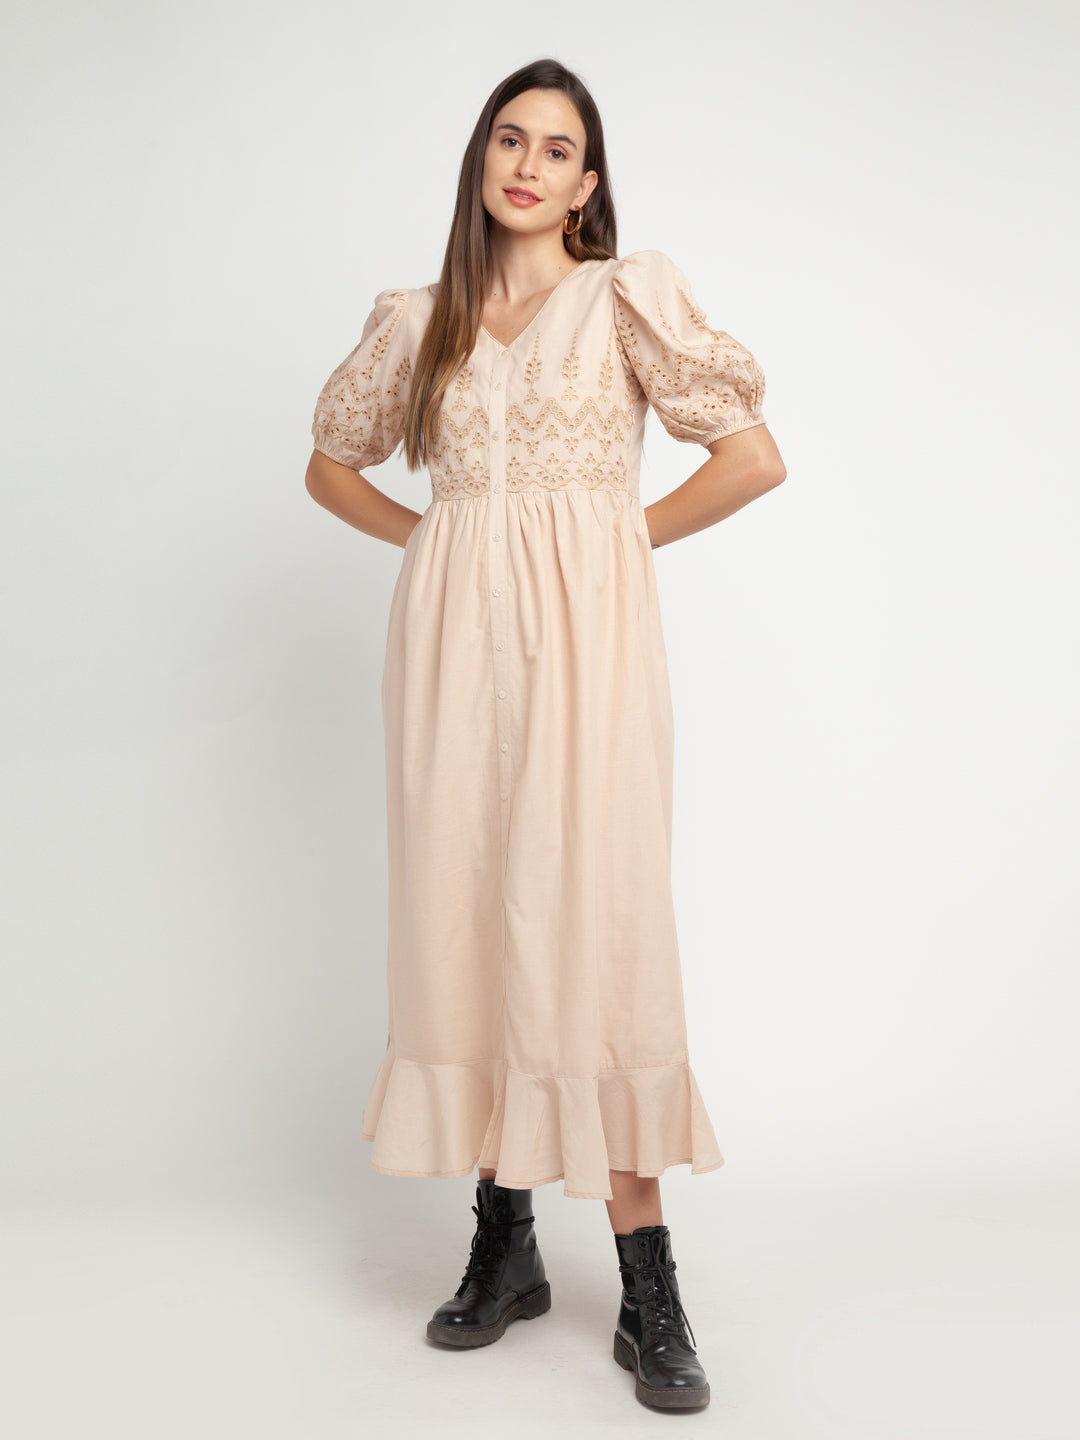 Beige Embroidered Shirt Dress Maxi Dress For Women